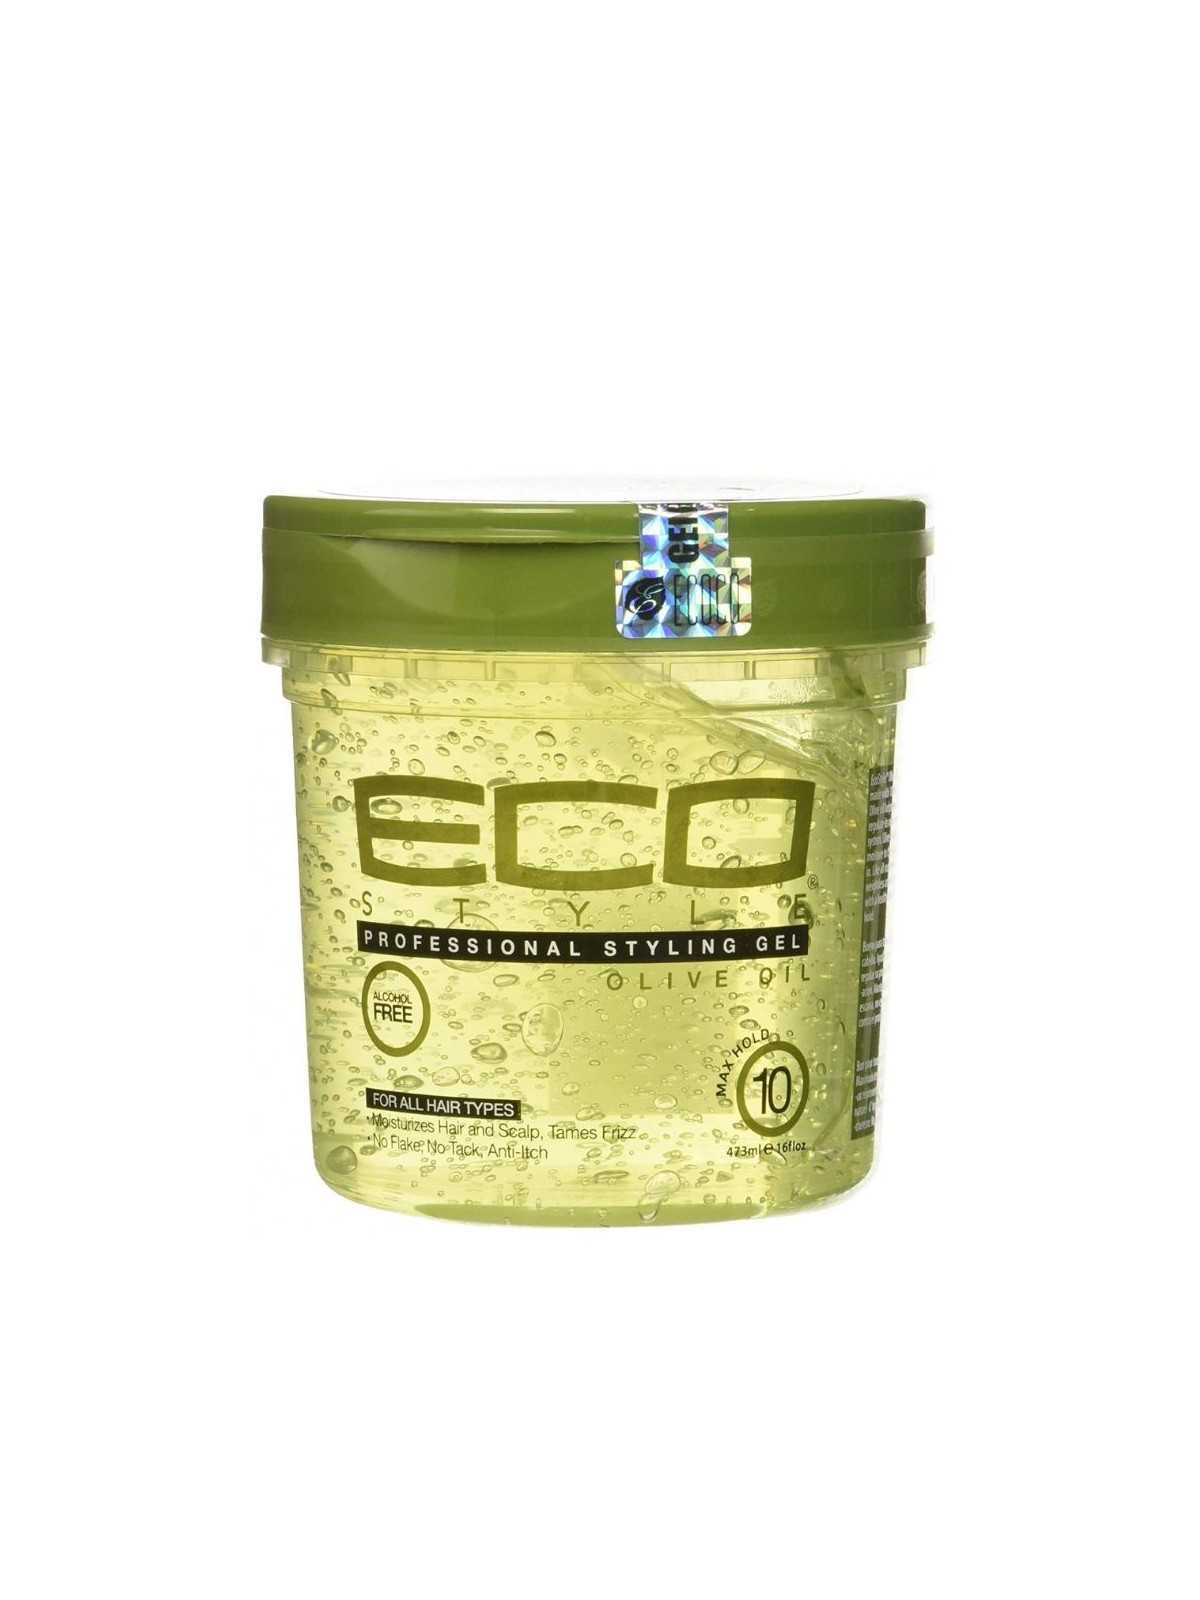 Comprar ECO Style Styling Gel Olive Oil 473ml - Ideal cabello dañado en Inicio por sólo 4,29 € o un precio específico de 4,29 € en Thalie Care